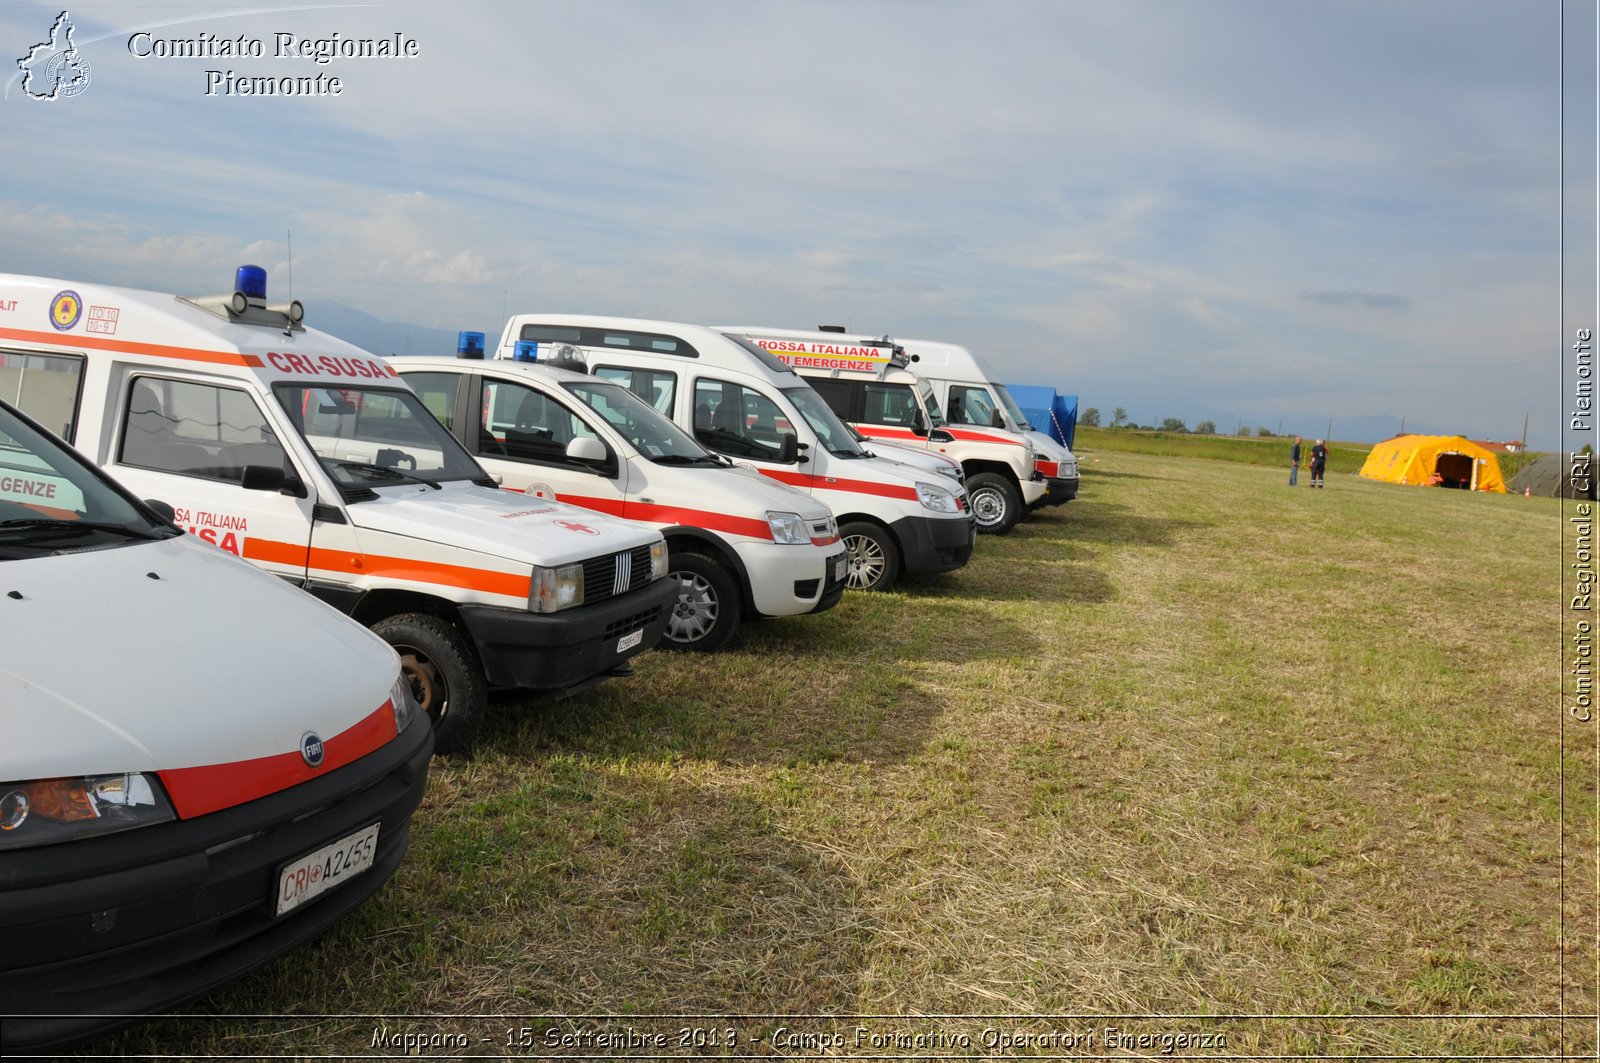 Mappano - 15 Settembre 2013 - Campo Formativo Operatori Emergenza - Croce Rossa Italiana - Comitato Regionale del Piemonte